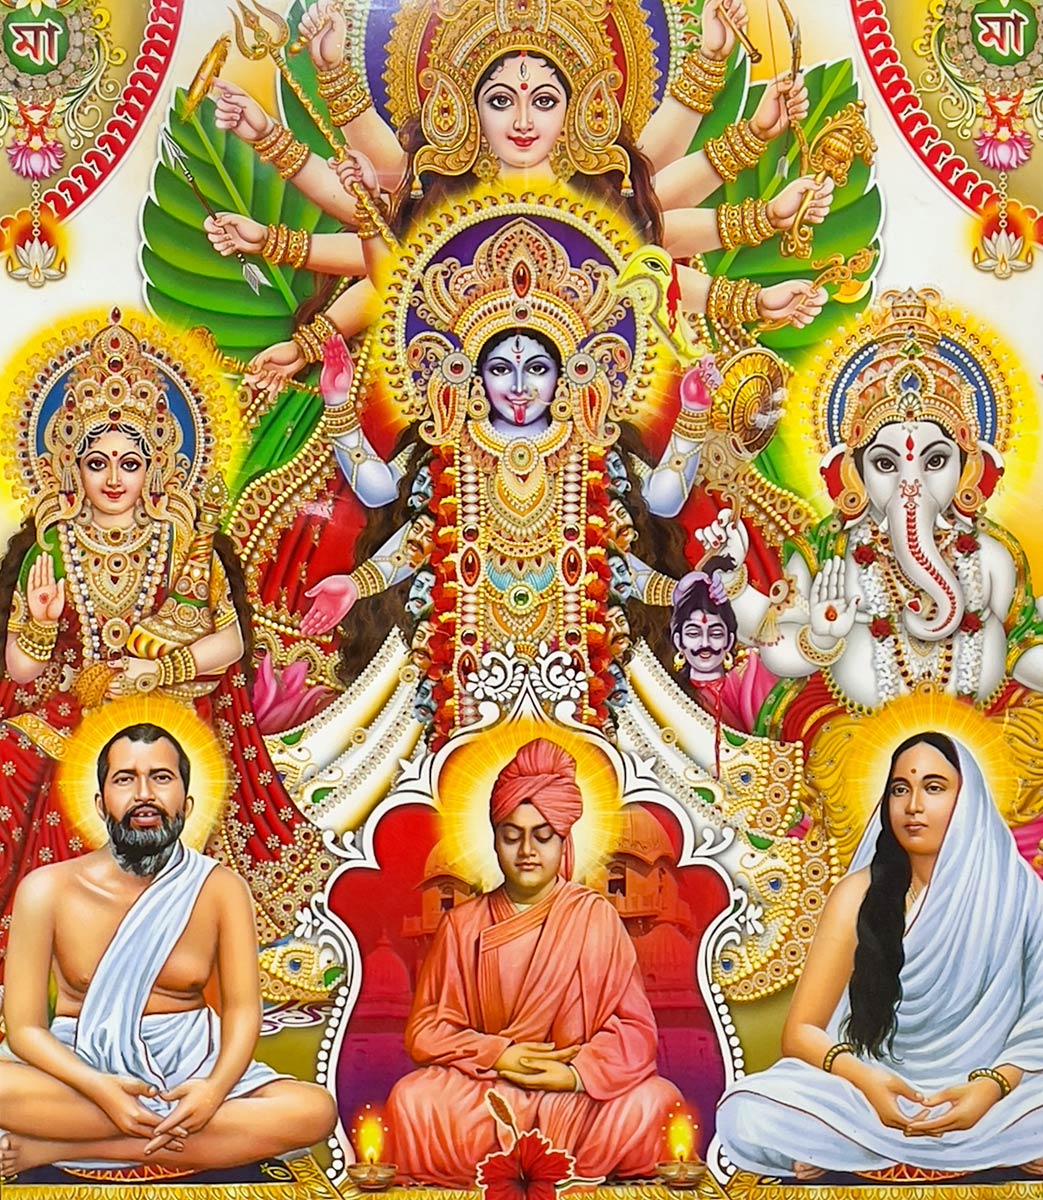 पोस्टर में देवी तारा को गणेश, श्री रामकृष्ण, विवेकानंद और सारदा देवी, मां तारा मंदिर, तारापीठ के साथ दिखाया गया है